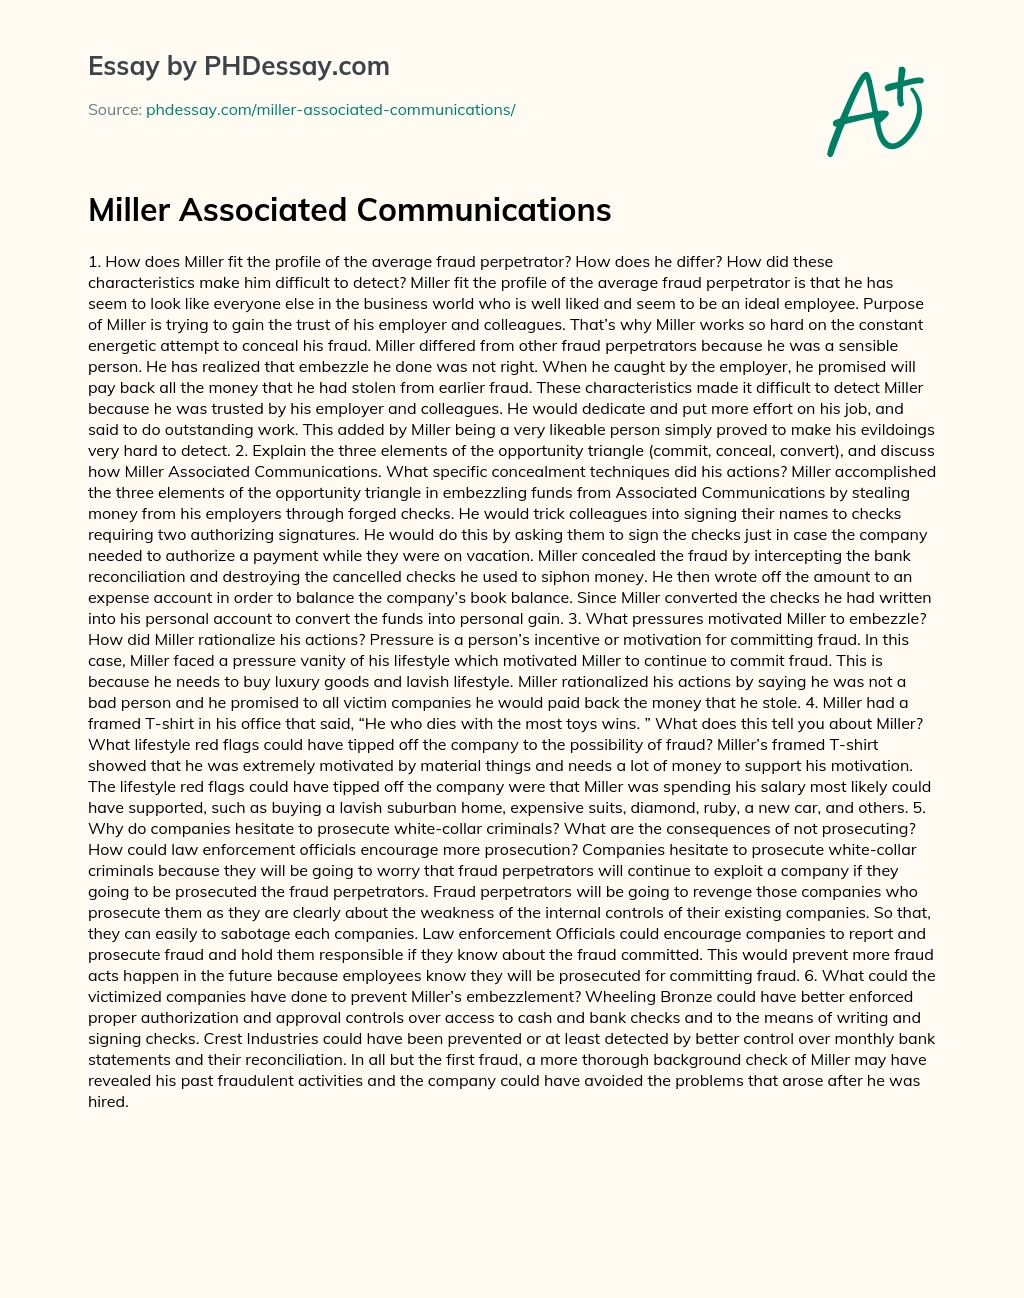 Miller Associated Communications essay